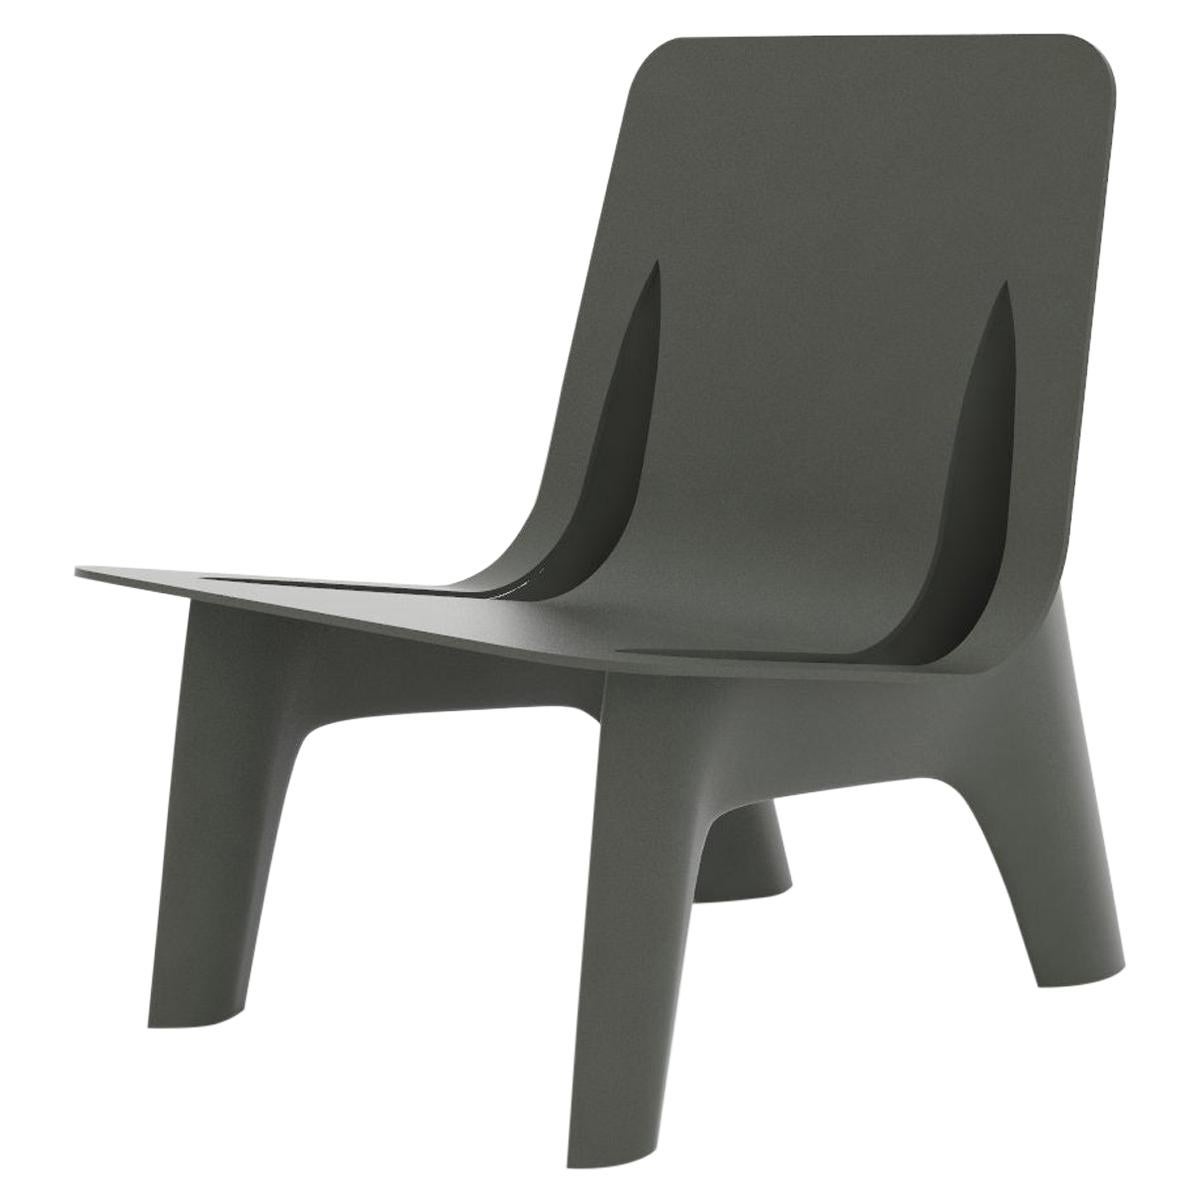 Fauteuil J-Chair en aluminium poli de couleur grise en forme d'Umbra par Zieta